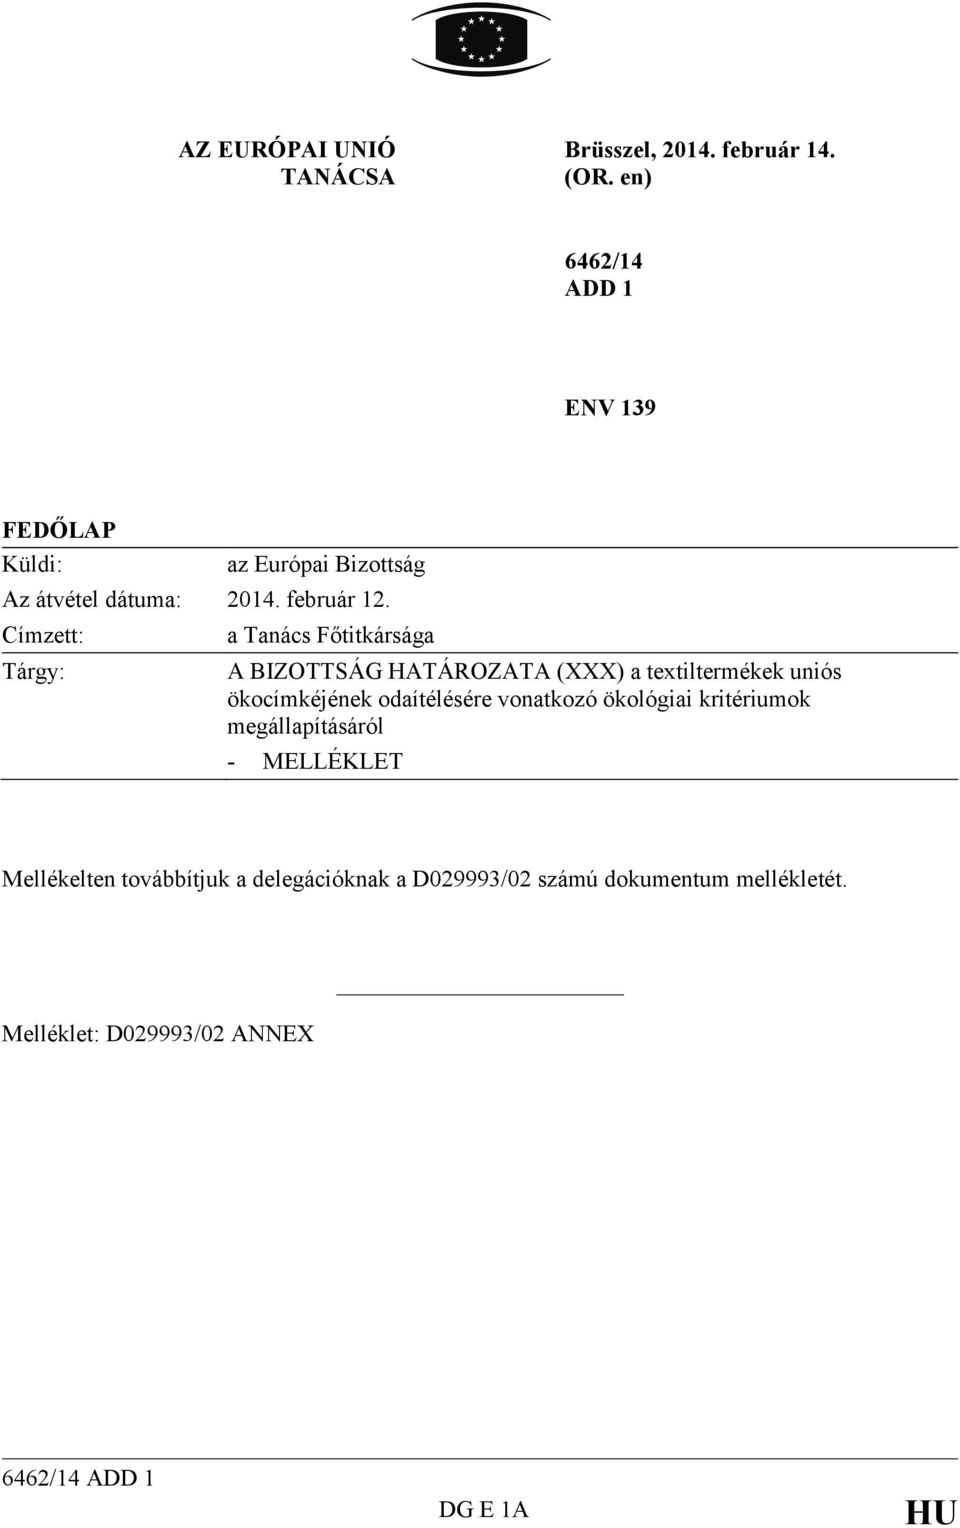 Címzett: Tárgy: a Tanács Főtitkársága A BIZOTTSÁG HATÁROZATA (XXX) a textiltermékek uniós ökocímkéjének odaítélésére